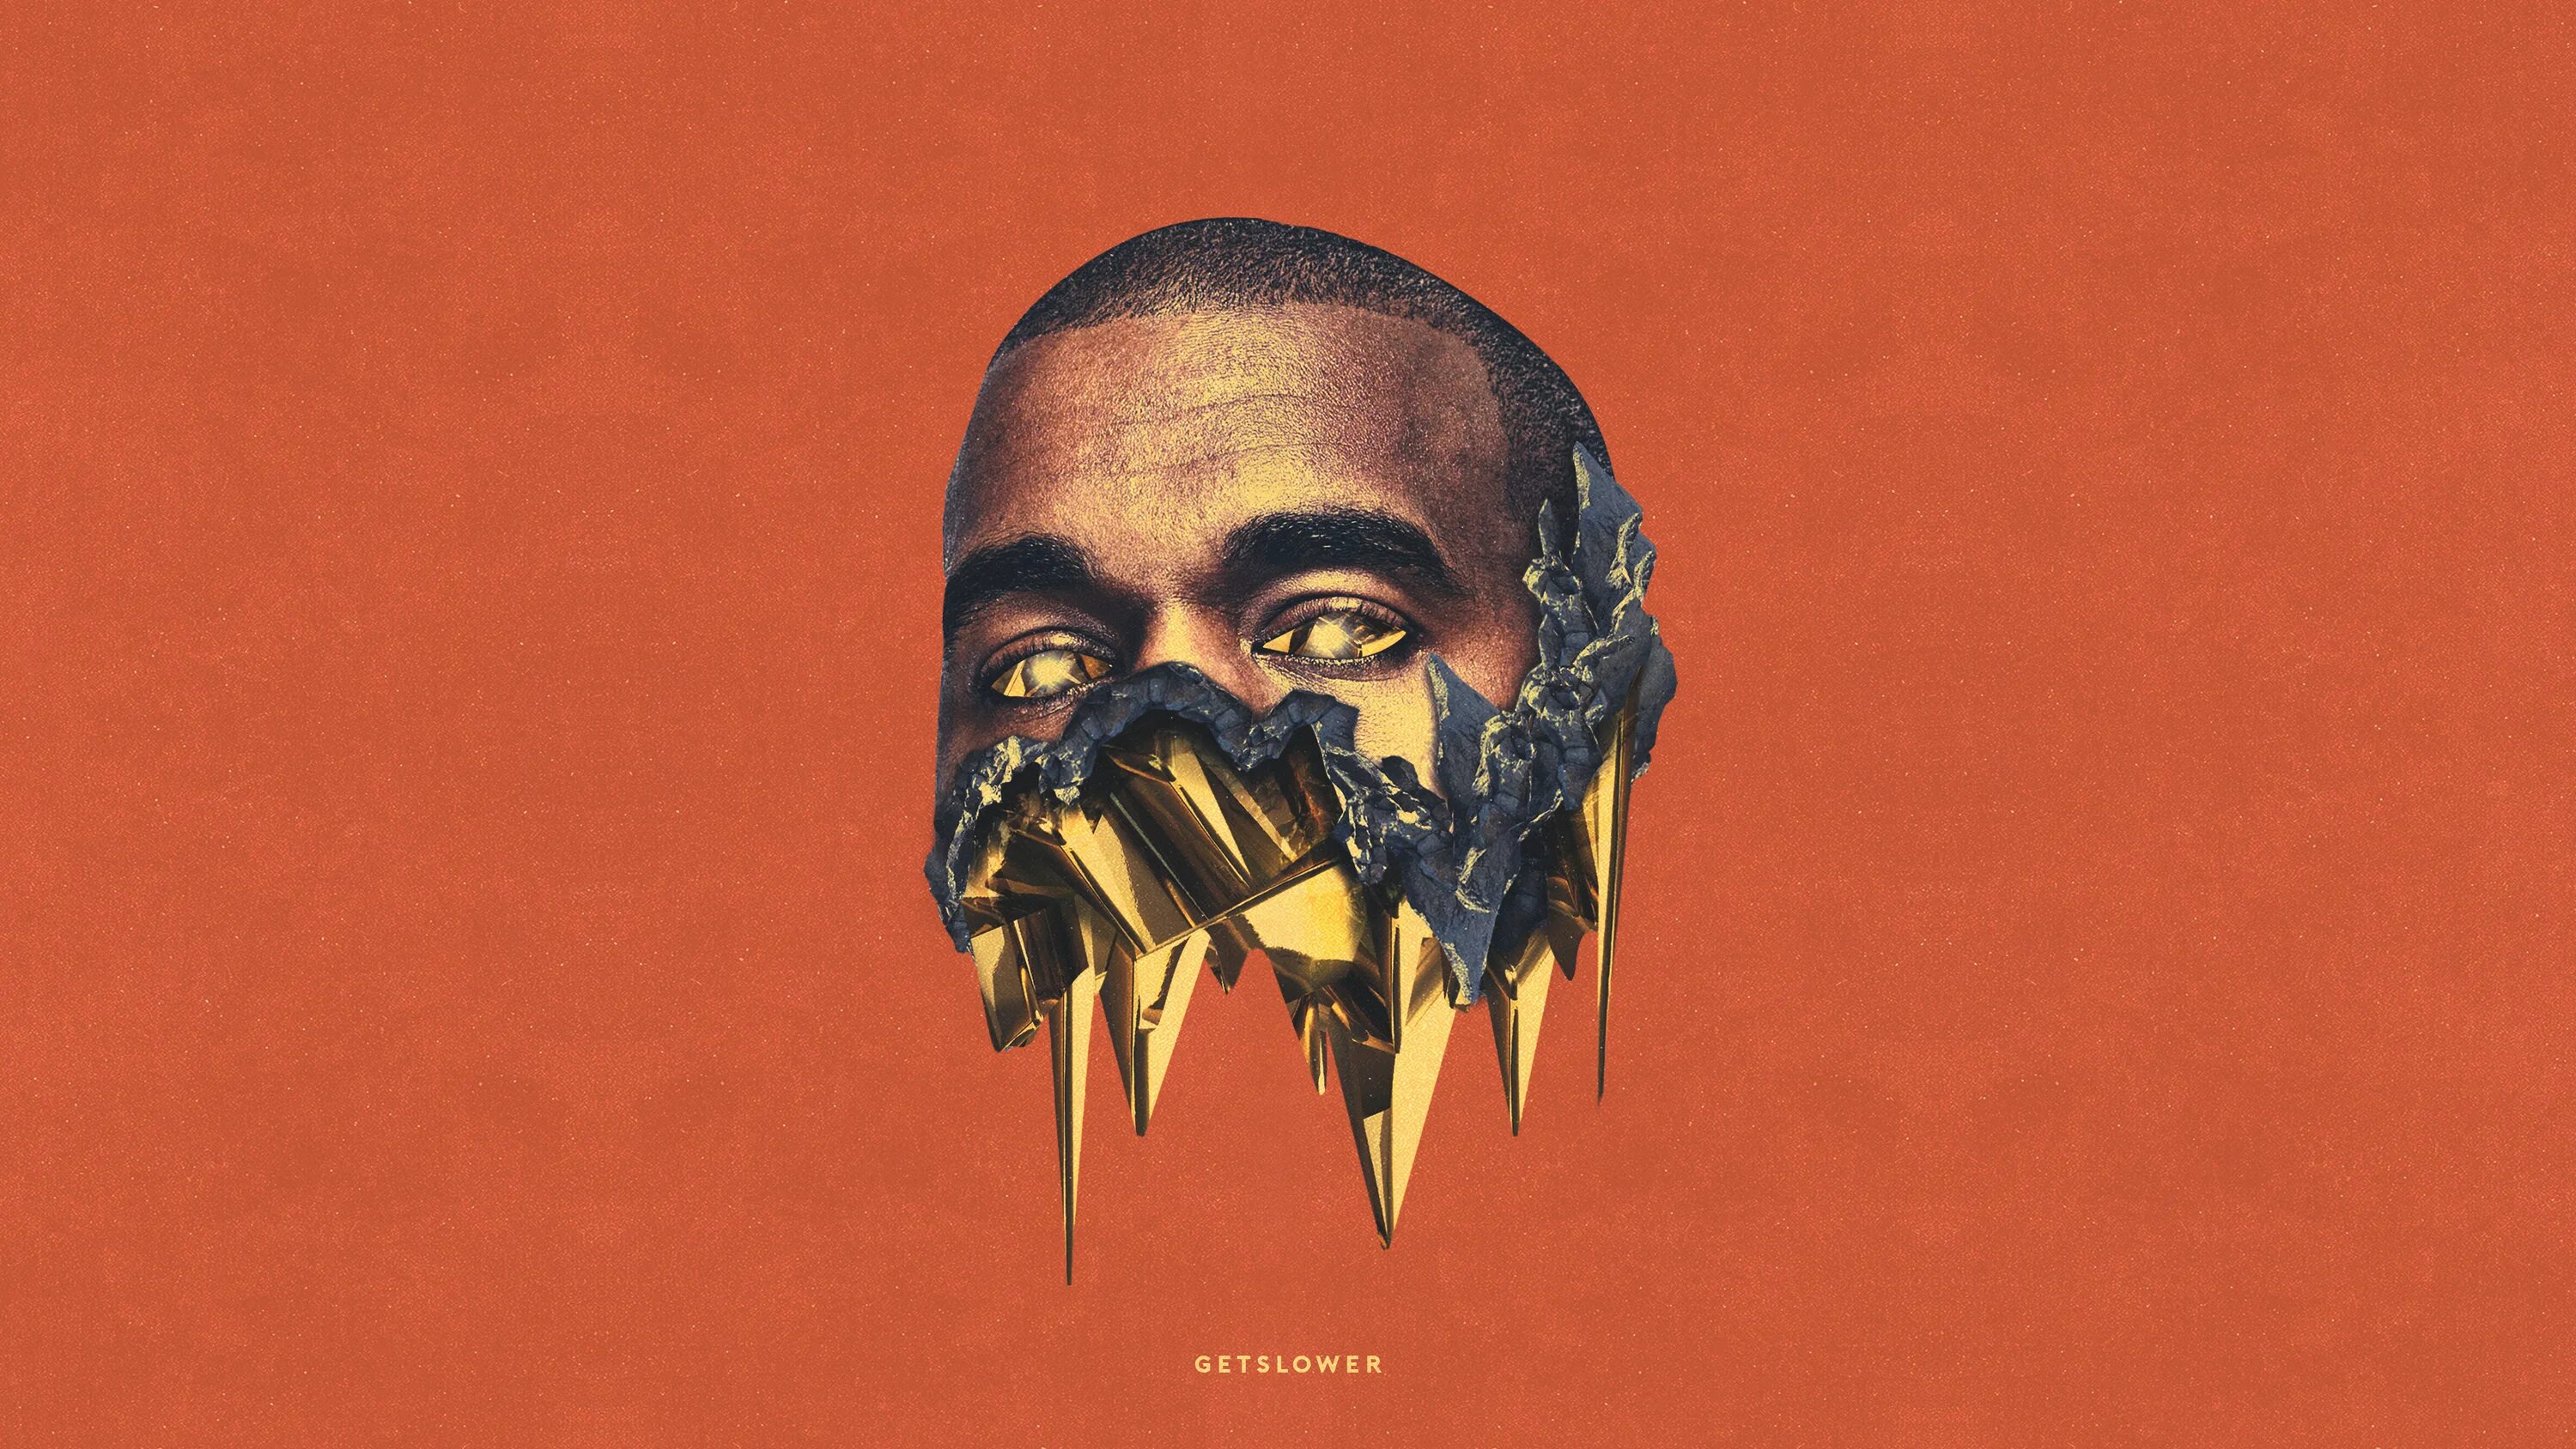 Канье Уэст Wallpaper. Donda Канье Уэст Cover. Kanye West обложка Золотая. Kanye West album Cover.